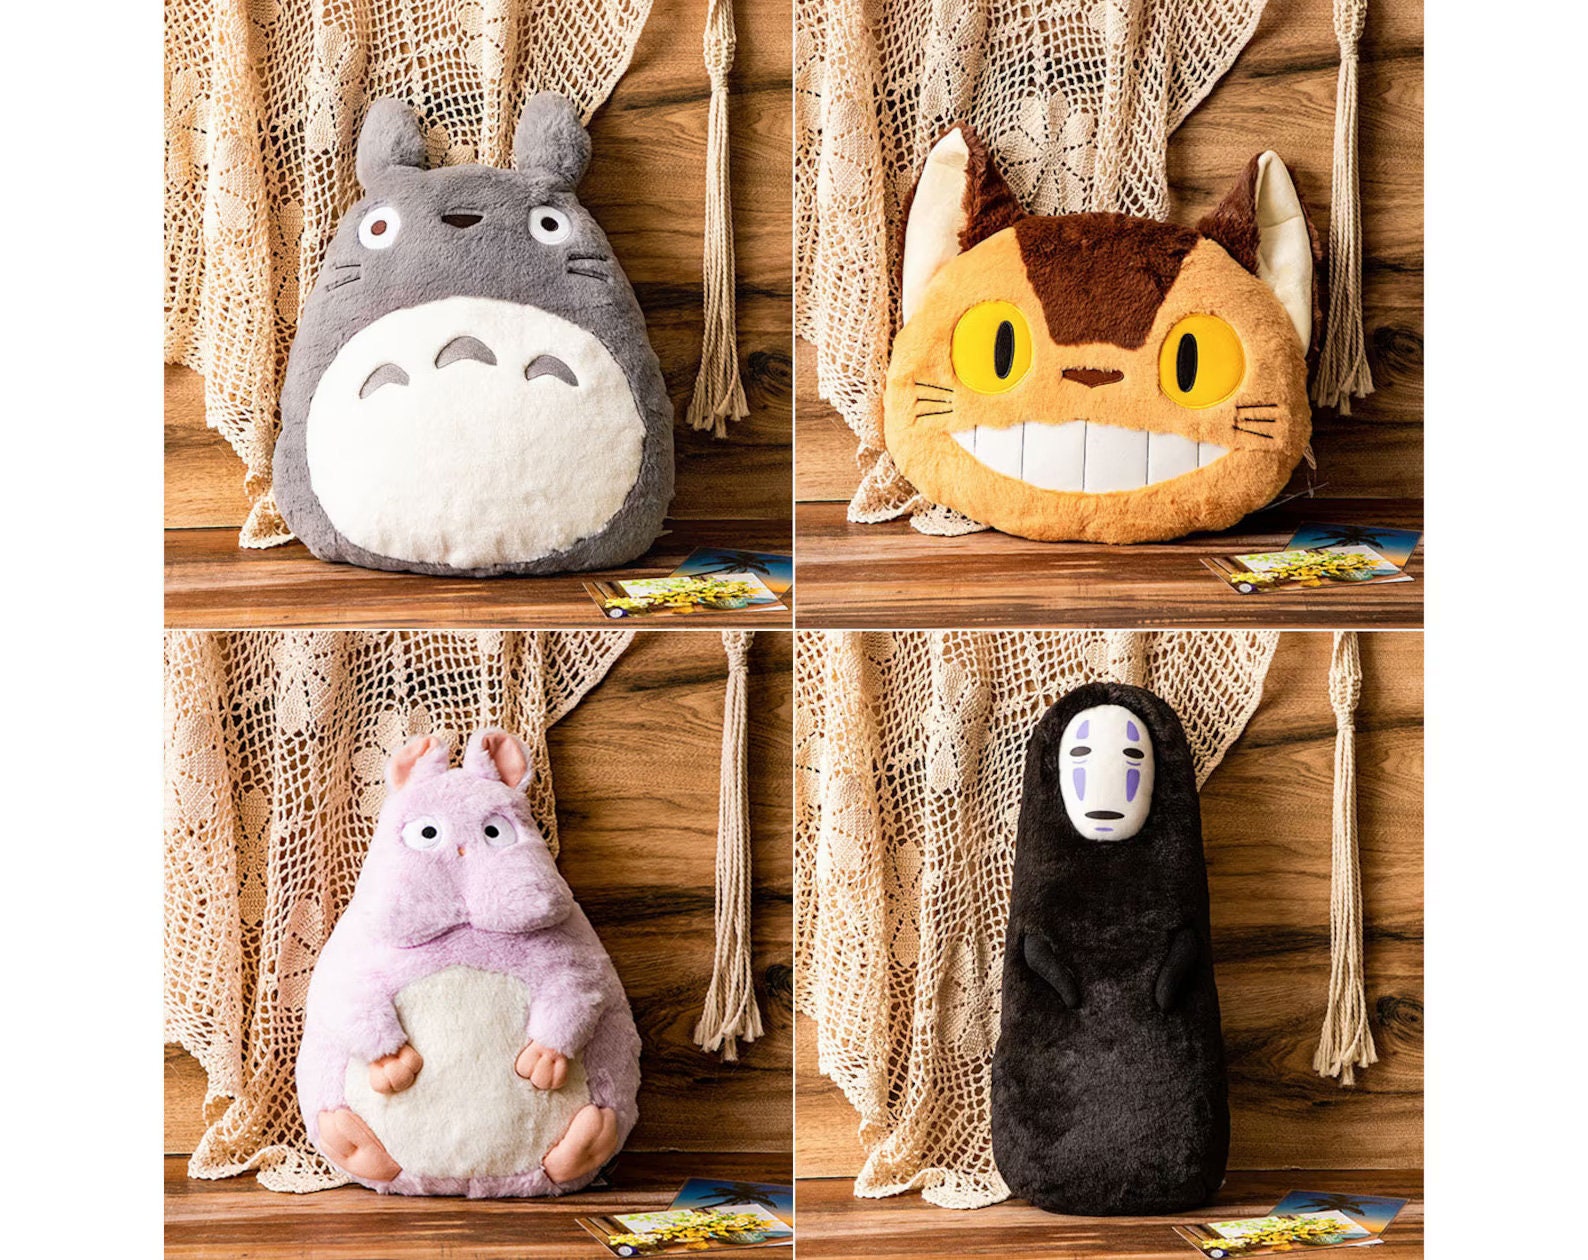 Coussin/oreiller/décoration originale Ghibli Totoro, Catbus, No Face, Jiji,  Bo Peluche/Animal en peluche/Réplique Le Voyage de Chihiro, Livraison Kikis  -  France